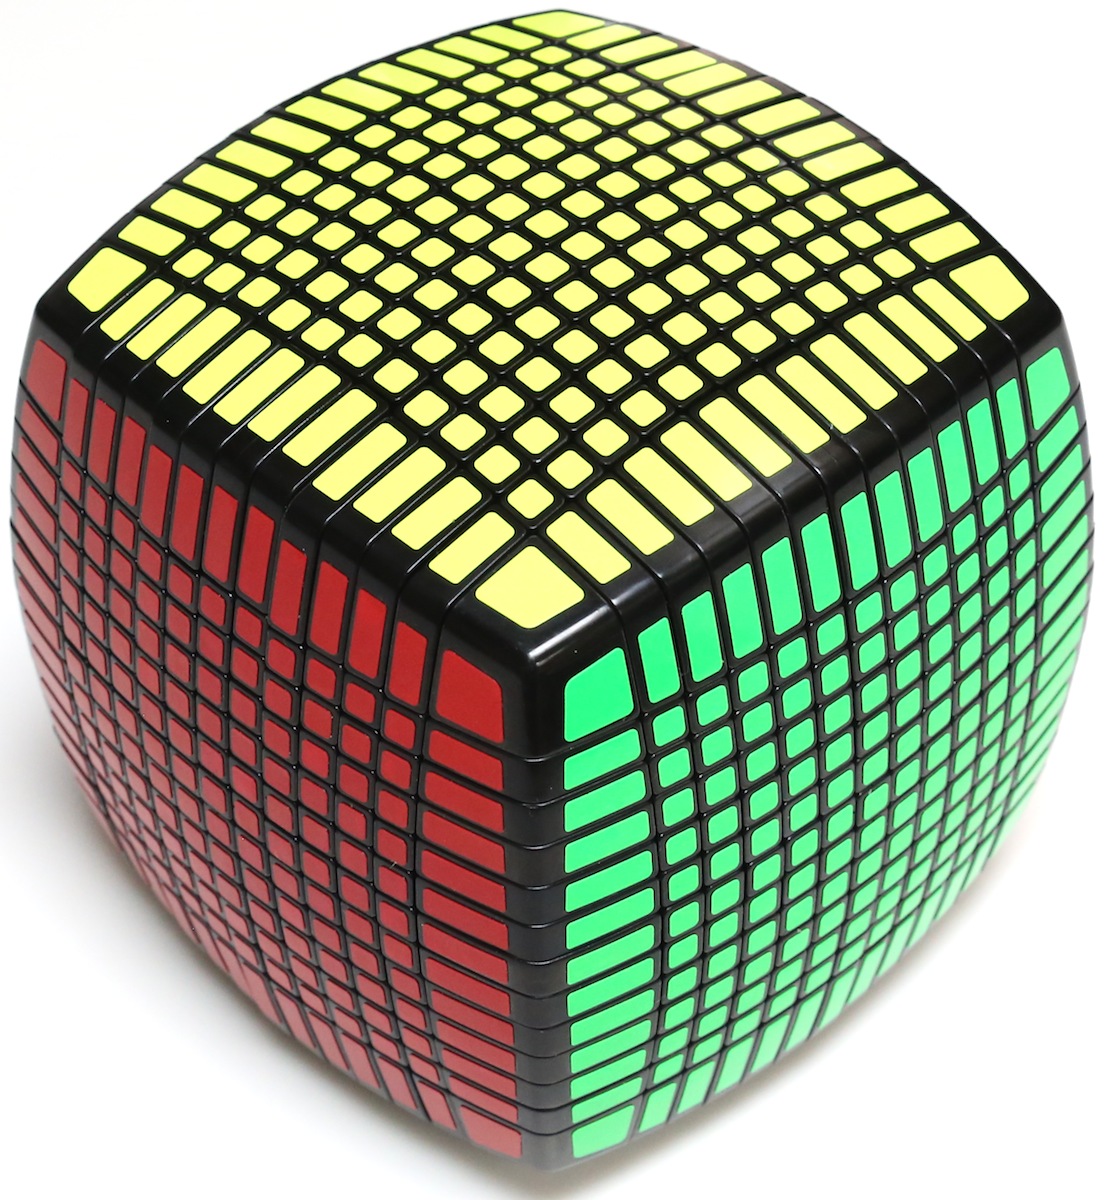 Головоломка сложности. Кубик Рубика 17x17x17. Кубик Рубика 17 на 17. Rubiks Cube 17x17. Кубик Рубика 21x21x21.